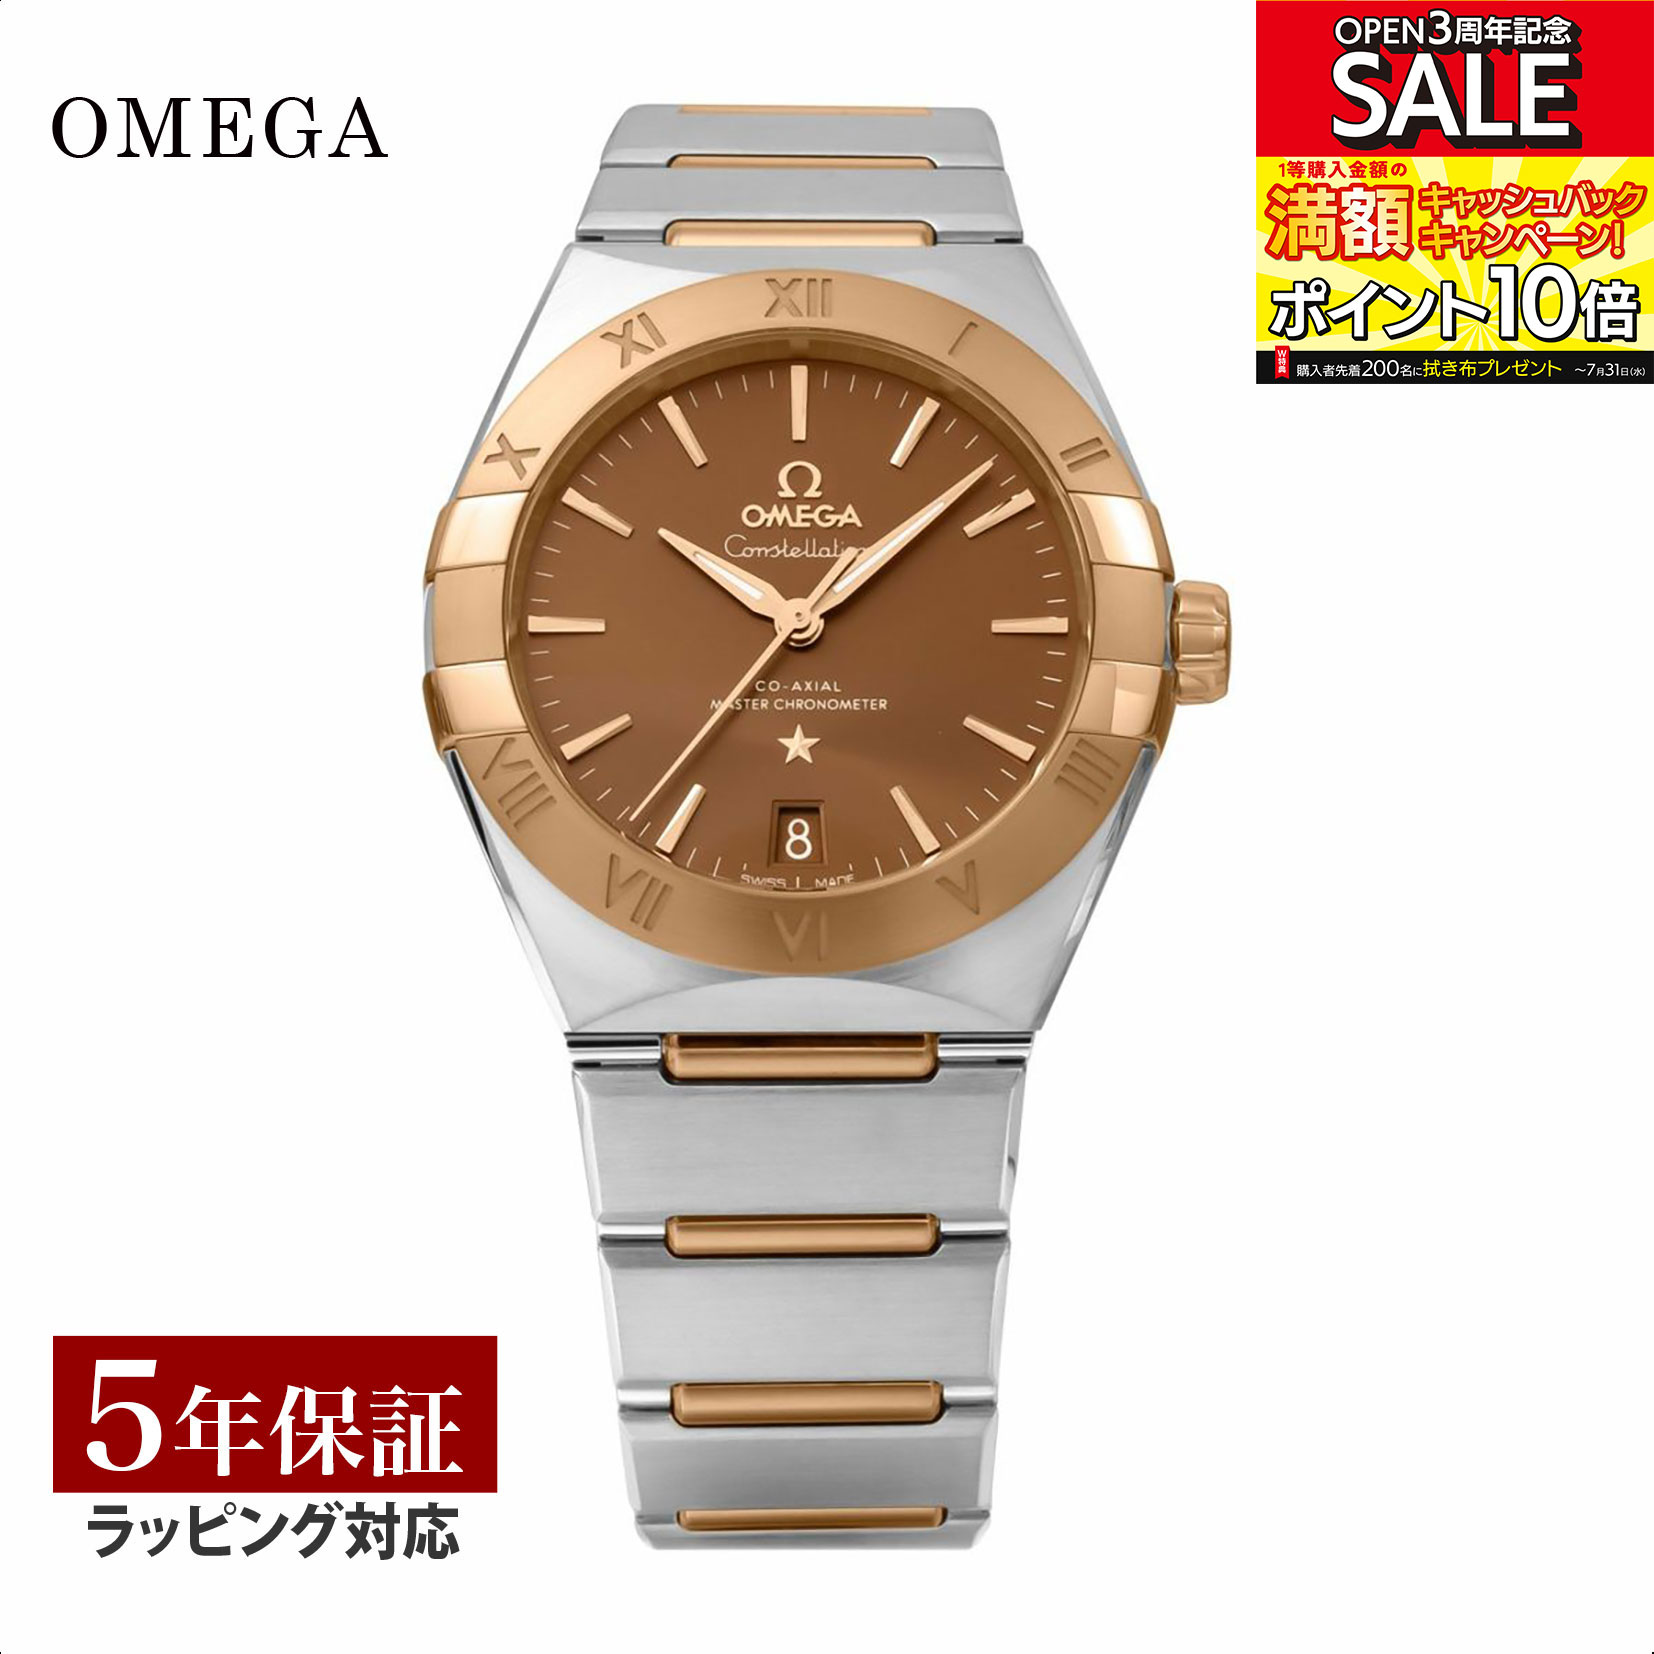 オメガ コンステレーション 腕時計（メンズ） OMEGA オメガ コンステレーション 自動巻 メンズ ブラウン 131.20.36.20.13.001 時計 腕時計 高級腕時計 ブランド